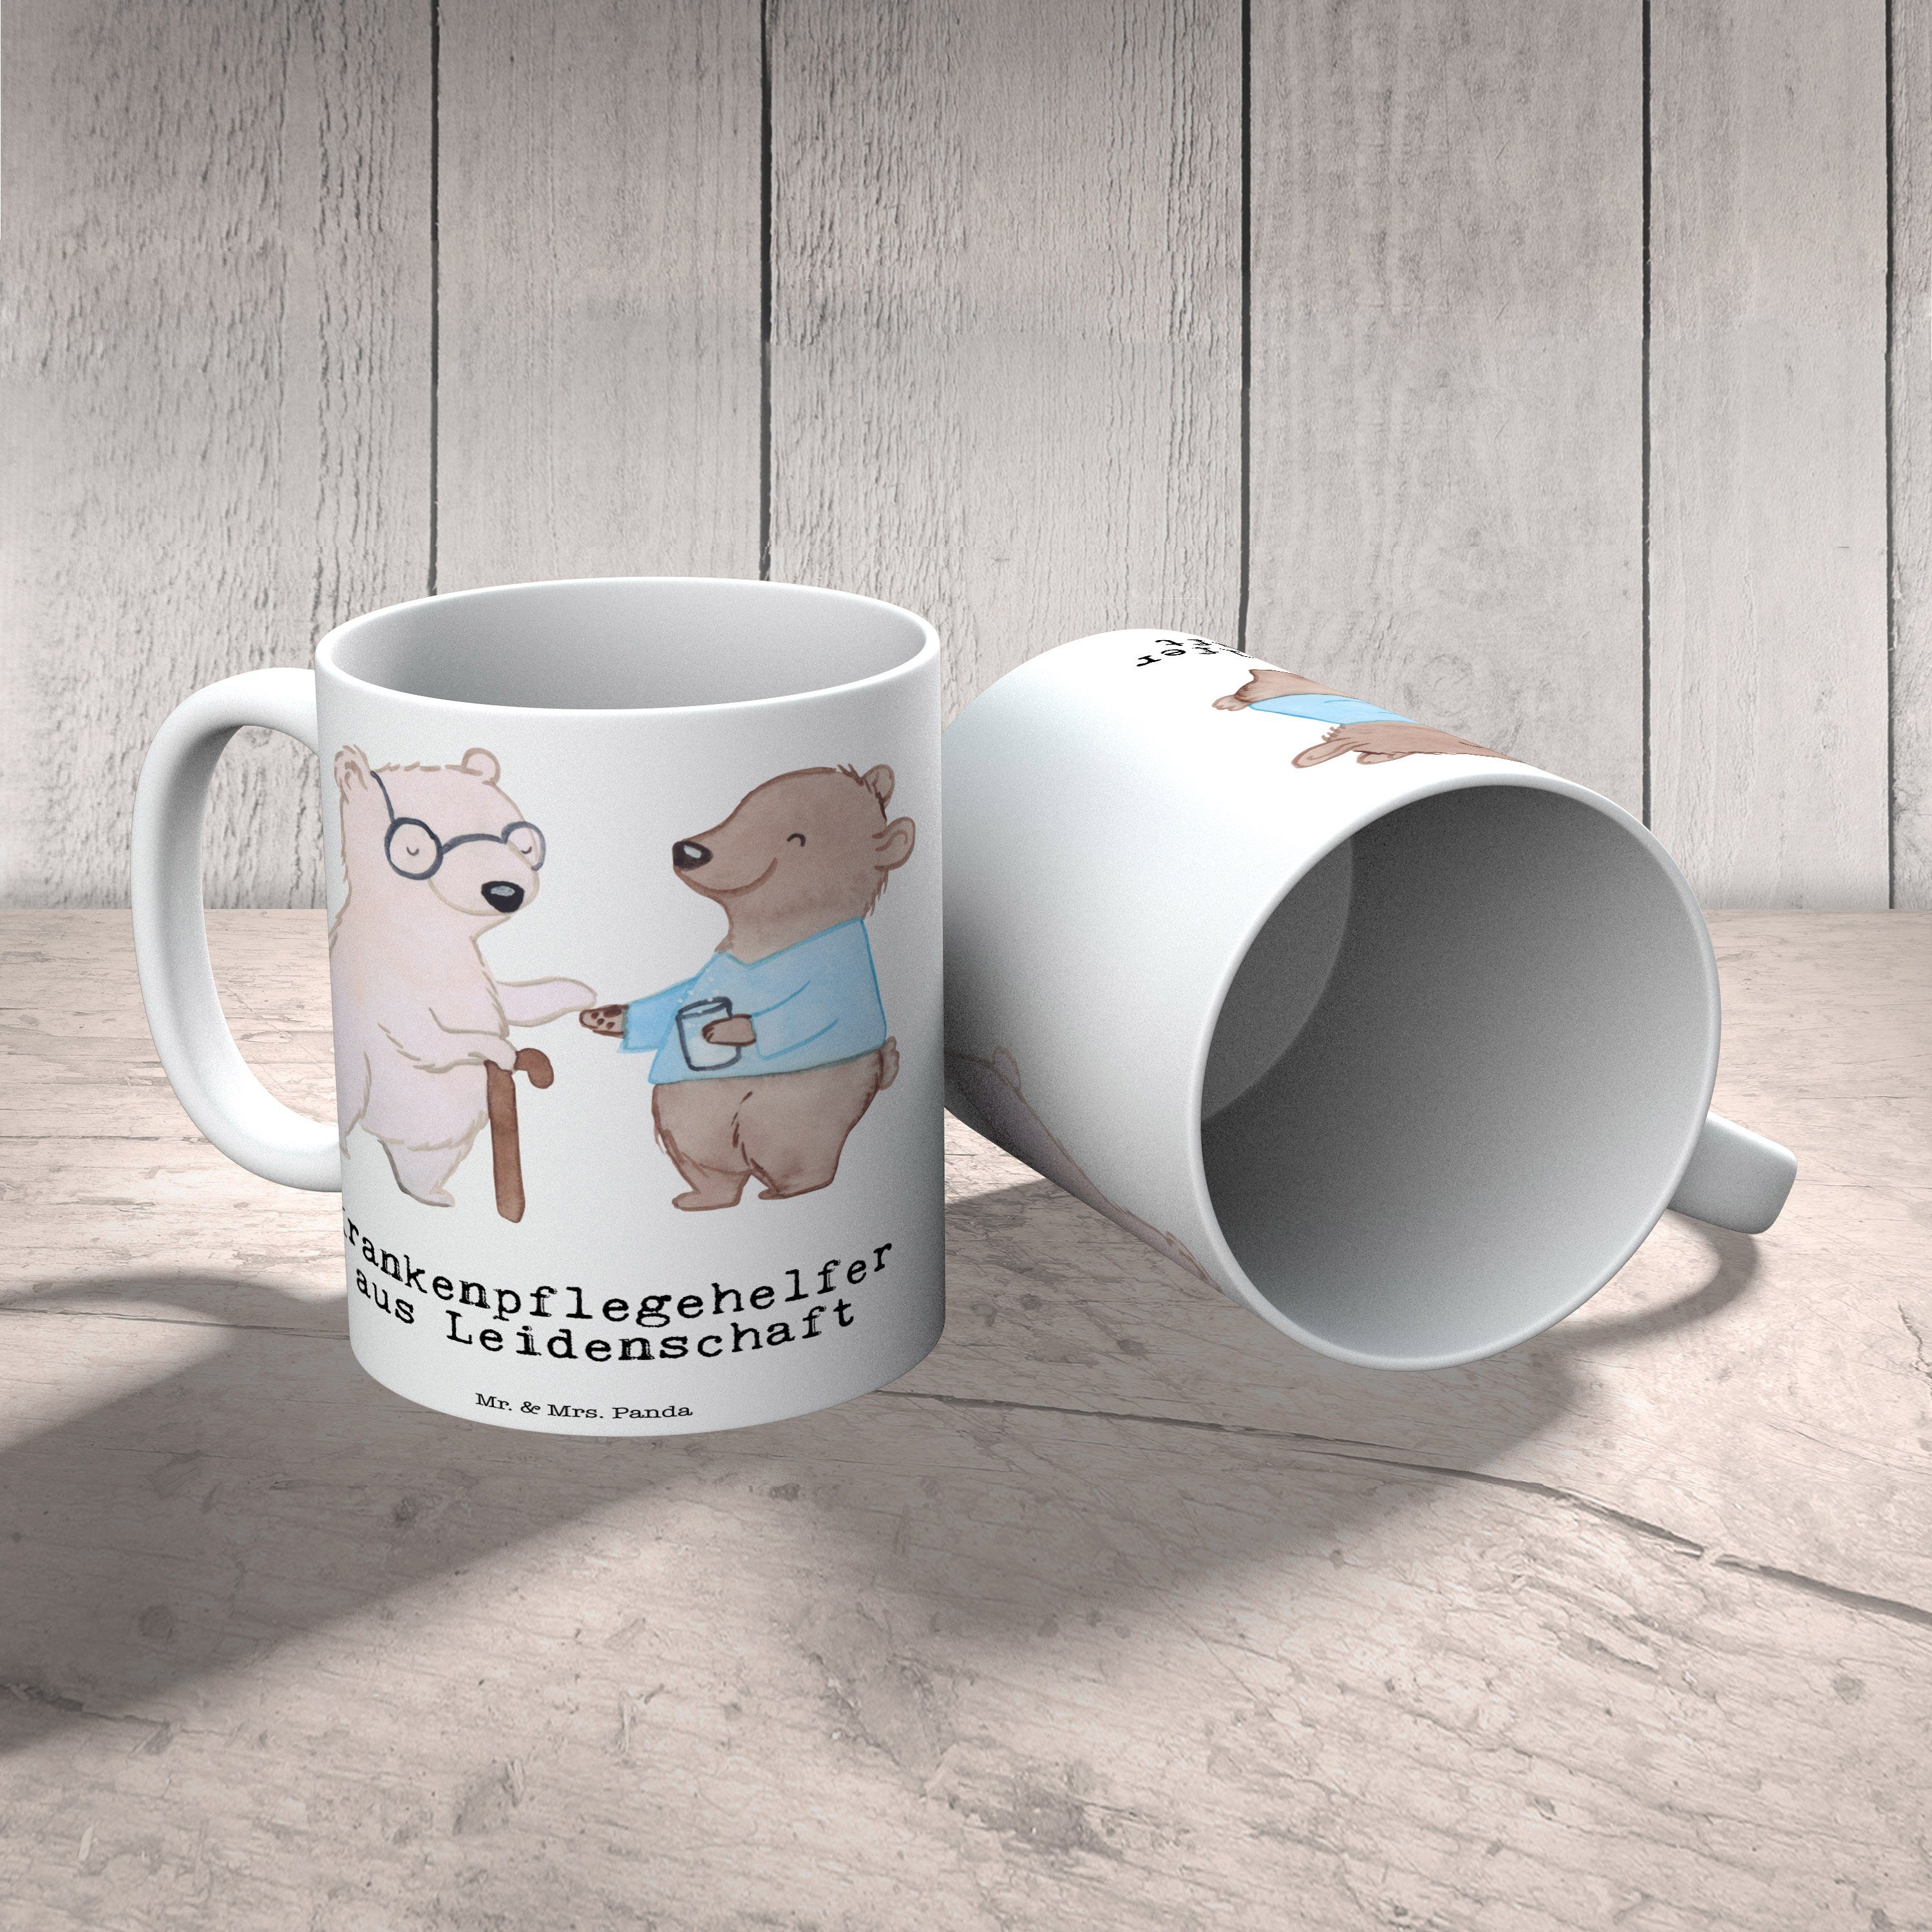 Mr. & Mrs. Panda Tasse Keramik Leidenschaft Kaffeebecher, Weiß Krankenpflegehelfer - aus Geschenk, 